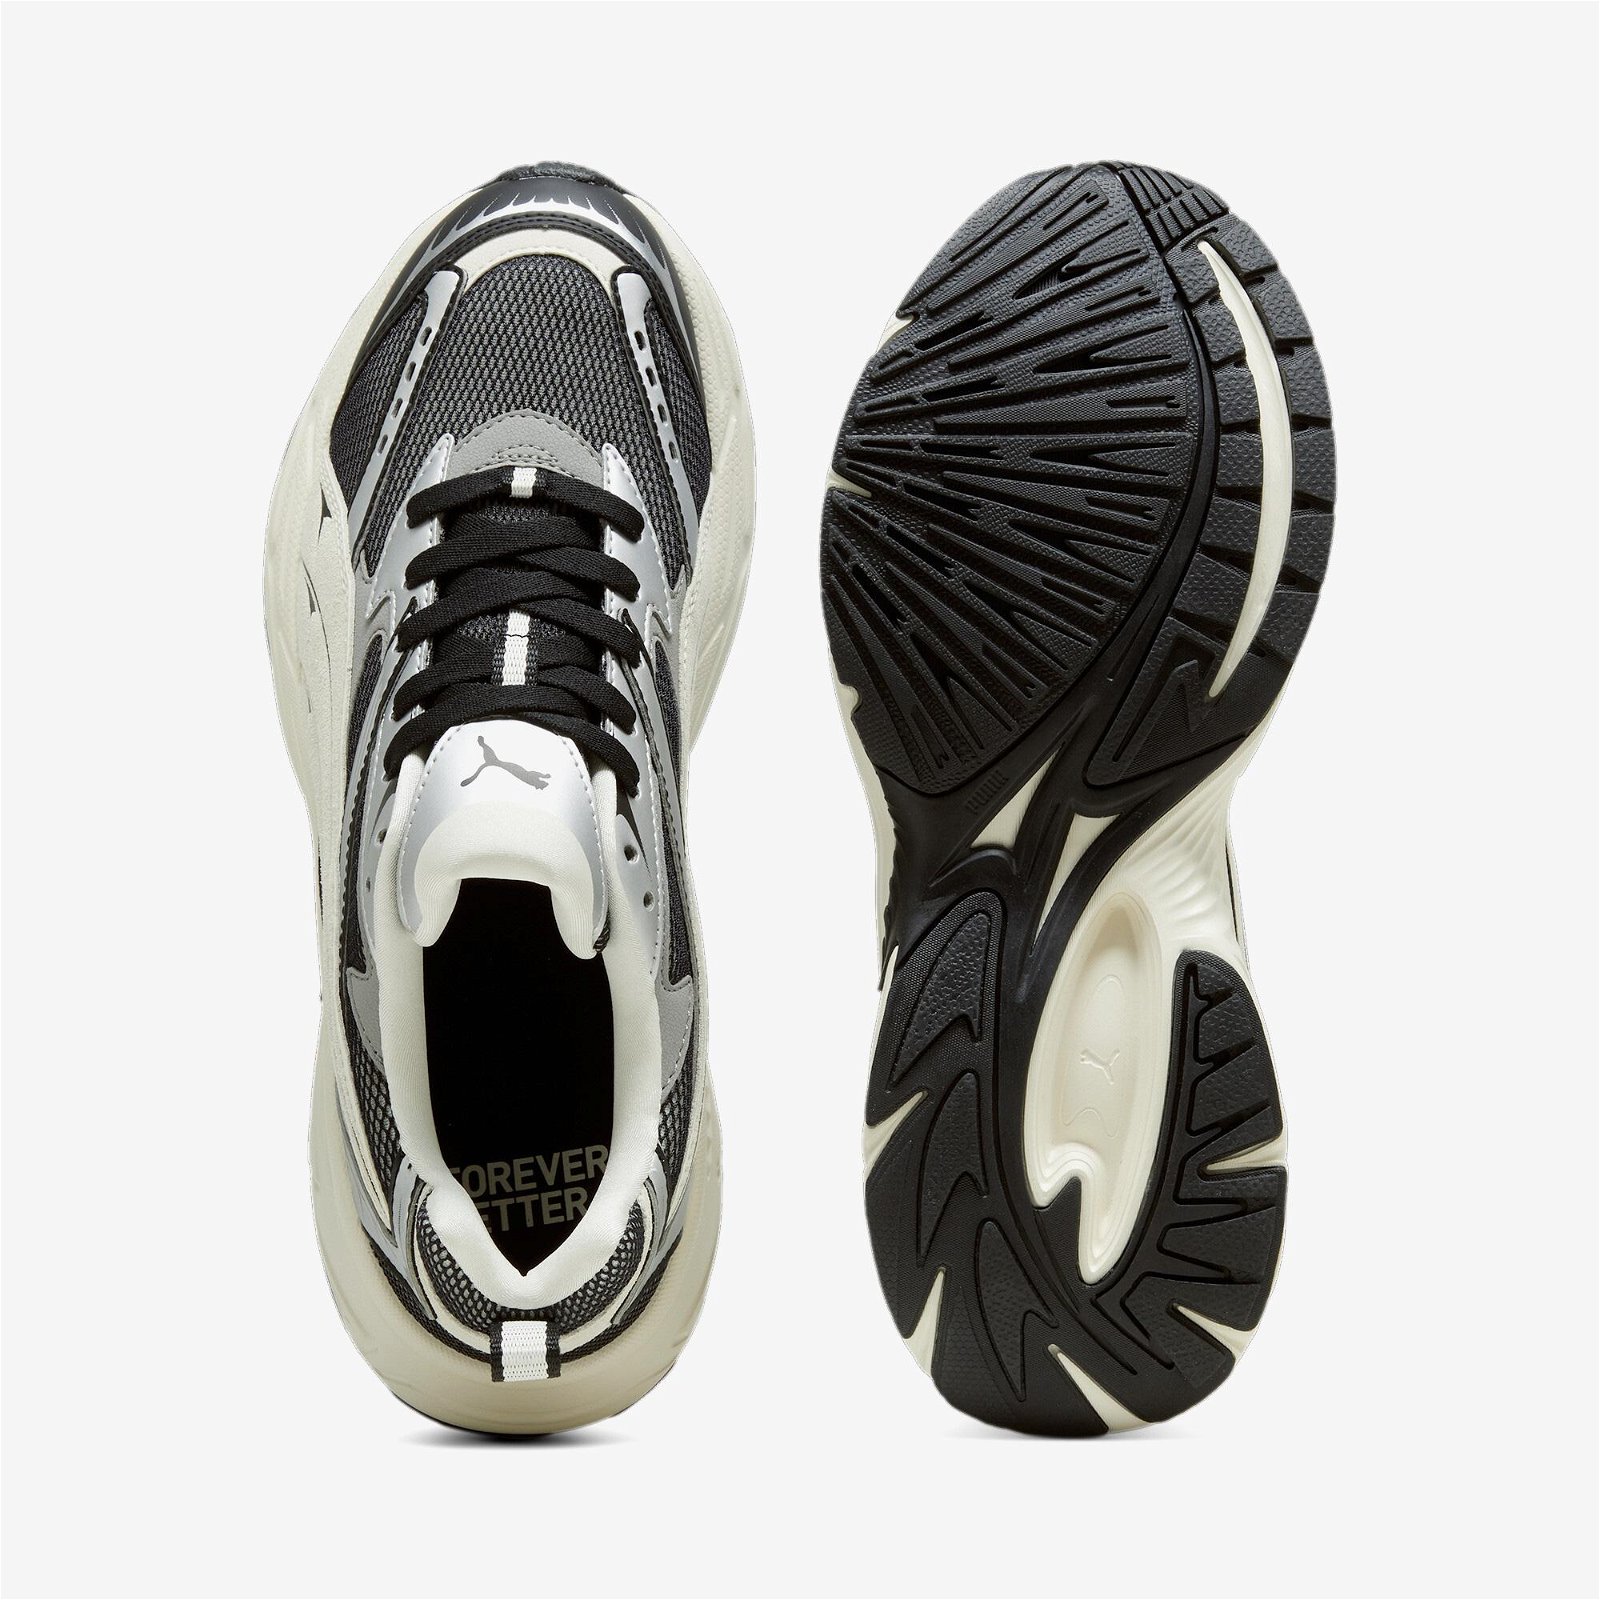 Puma Morphic Retro Unisex Siyah Spor Ayakkabı